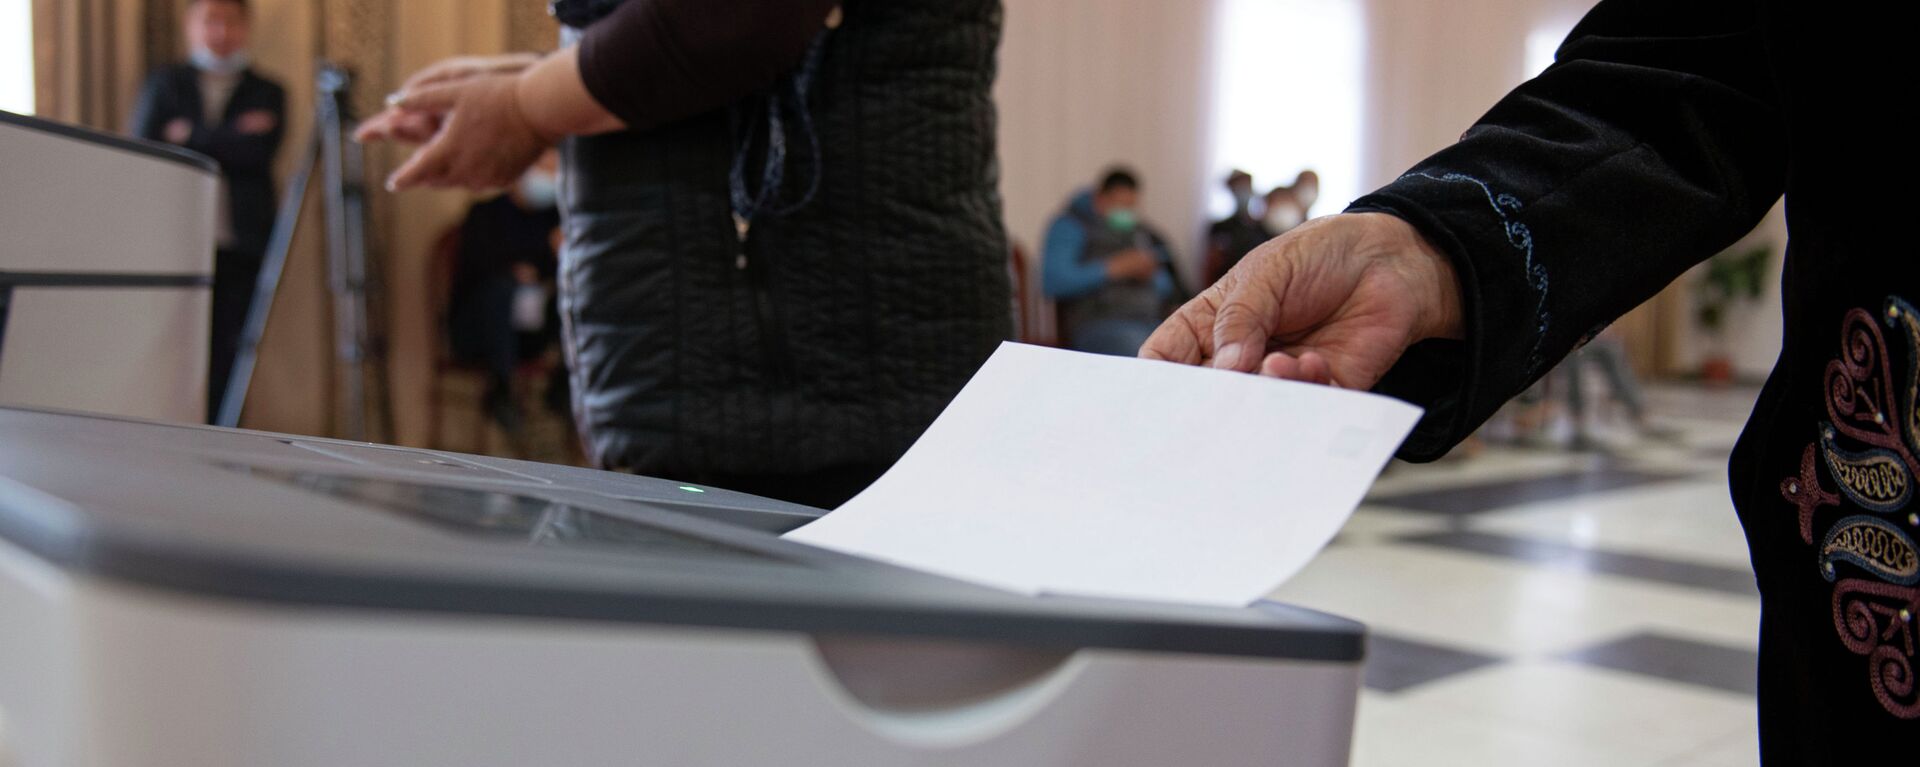 Женщина голосует на избирательном участке № 1 053 в селе Чон-Арык во время выборов в местные кенеши и референдум по проекту новой Конституции в Кыргызстане - Sputnik Кыргызстан, 1920, 11.04.2021